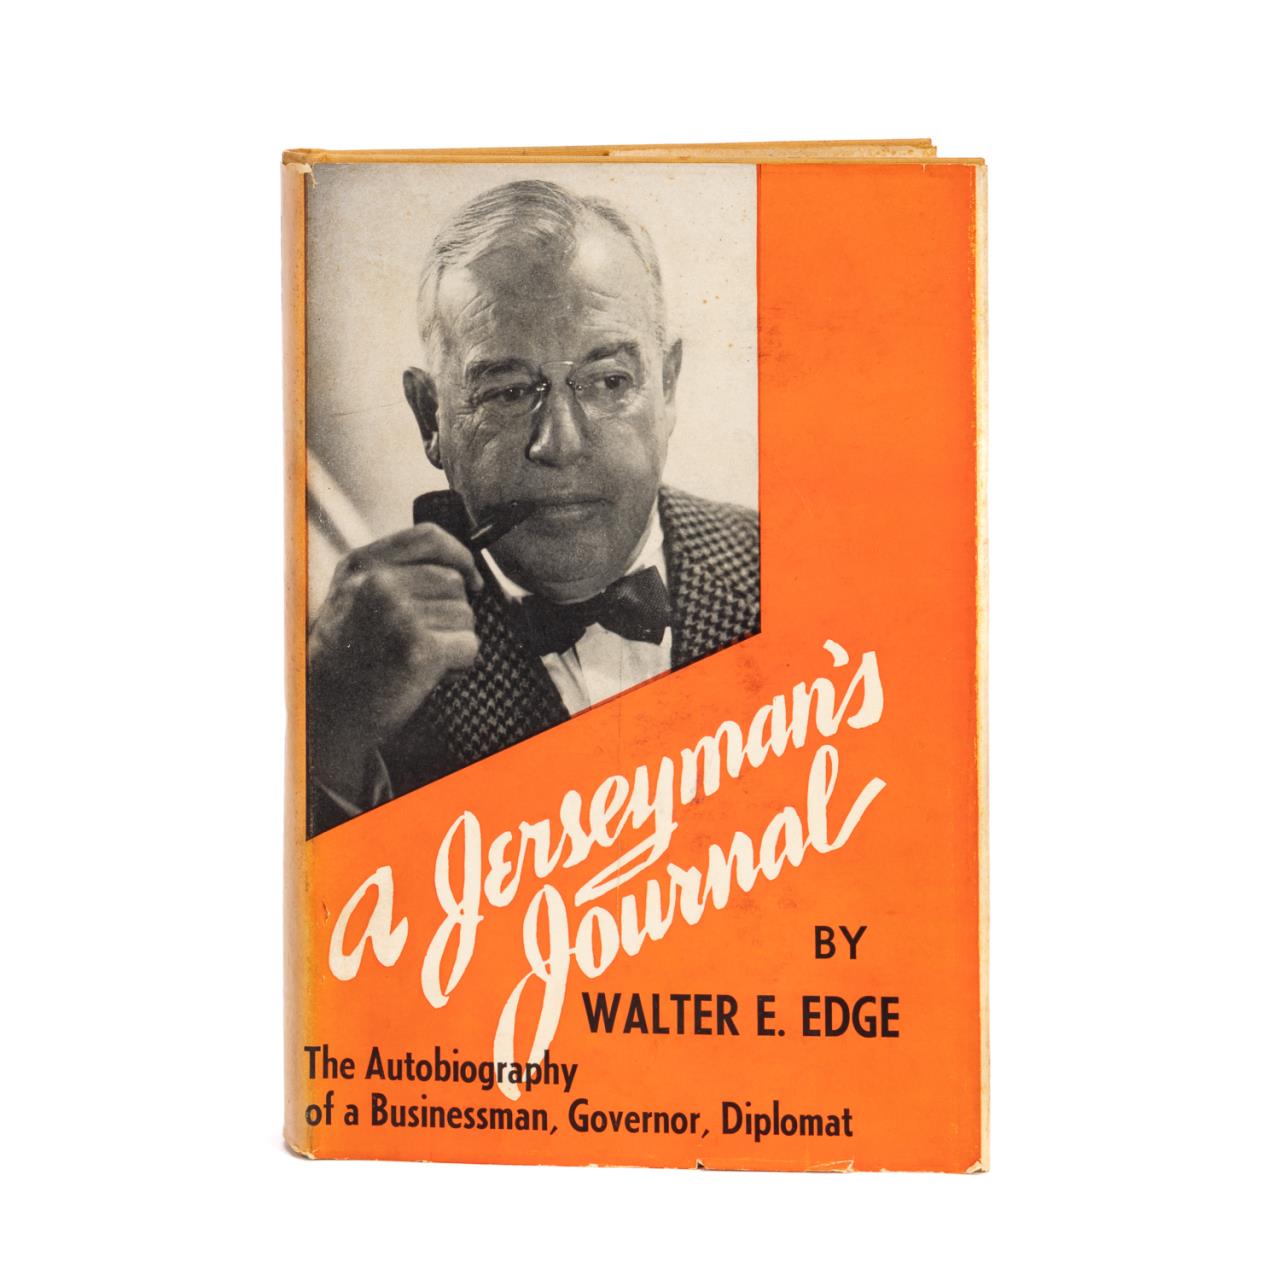 WALTER E. EDGE: A JERSEYMANS JOURNAL